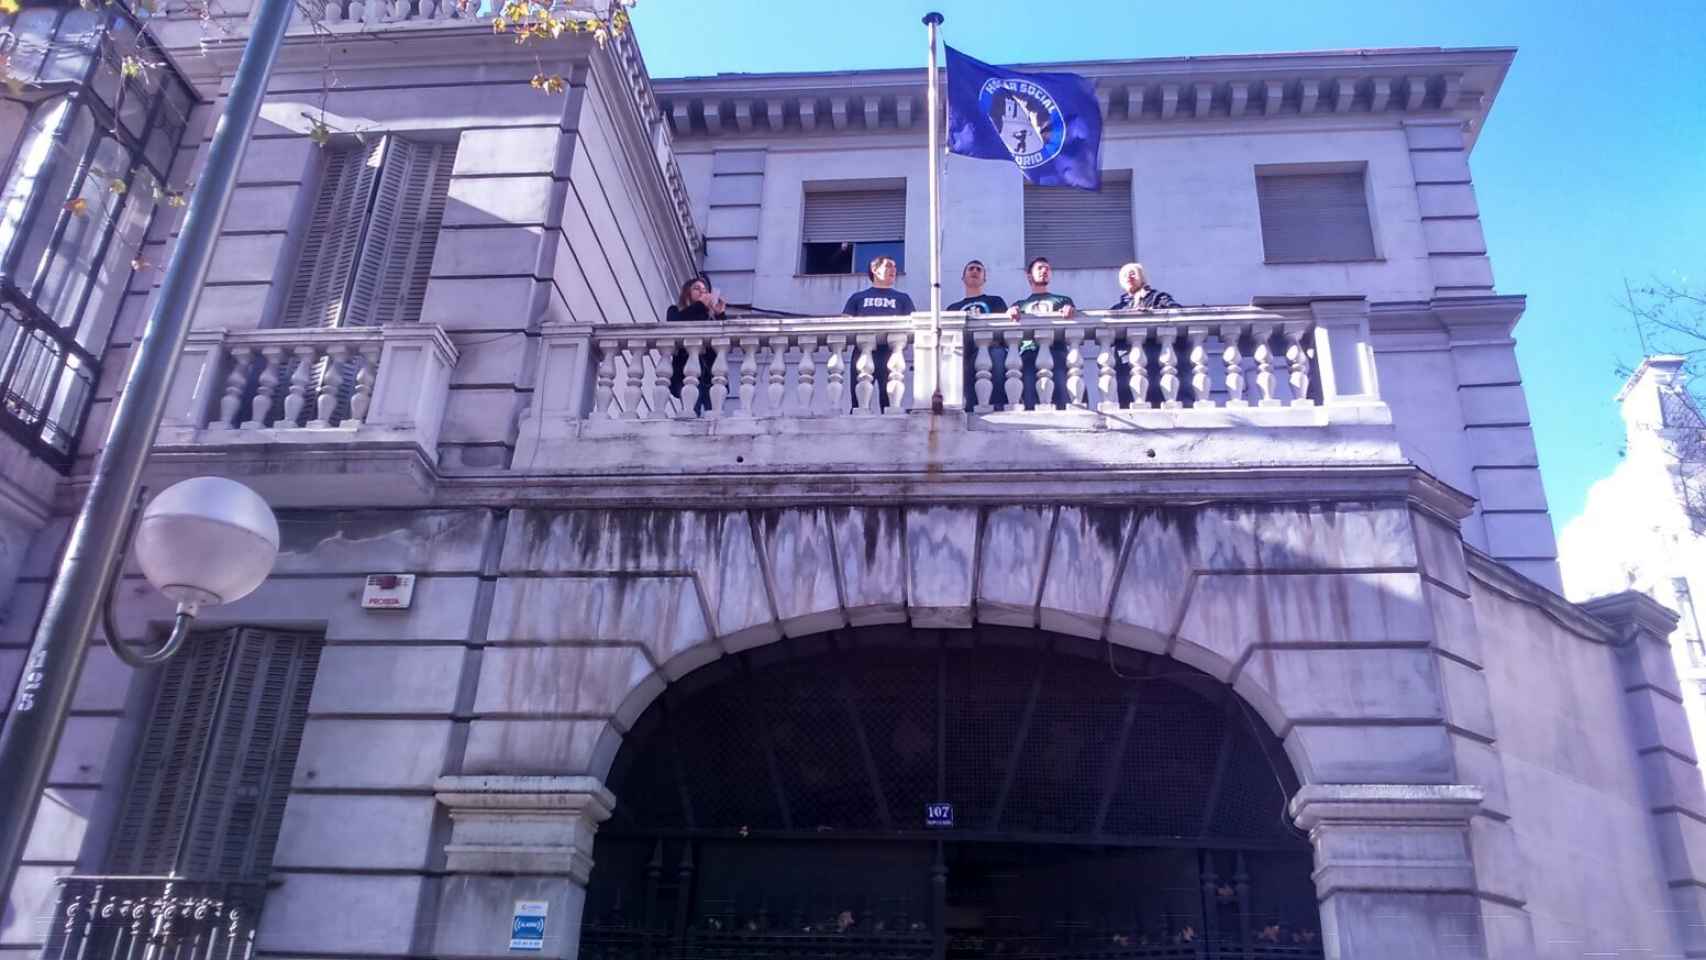 Los okupas de Hogar Social Madrid tras la usurpación del edificio.